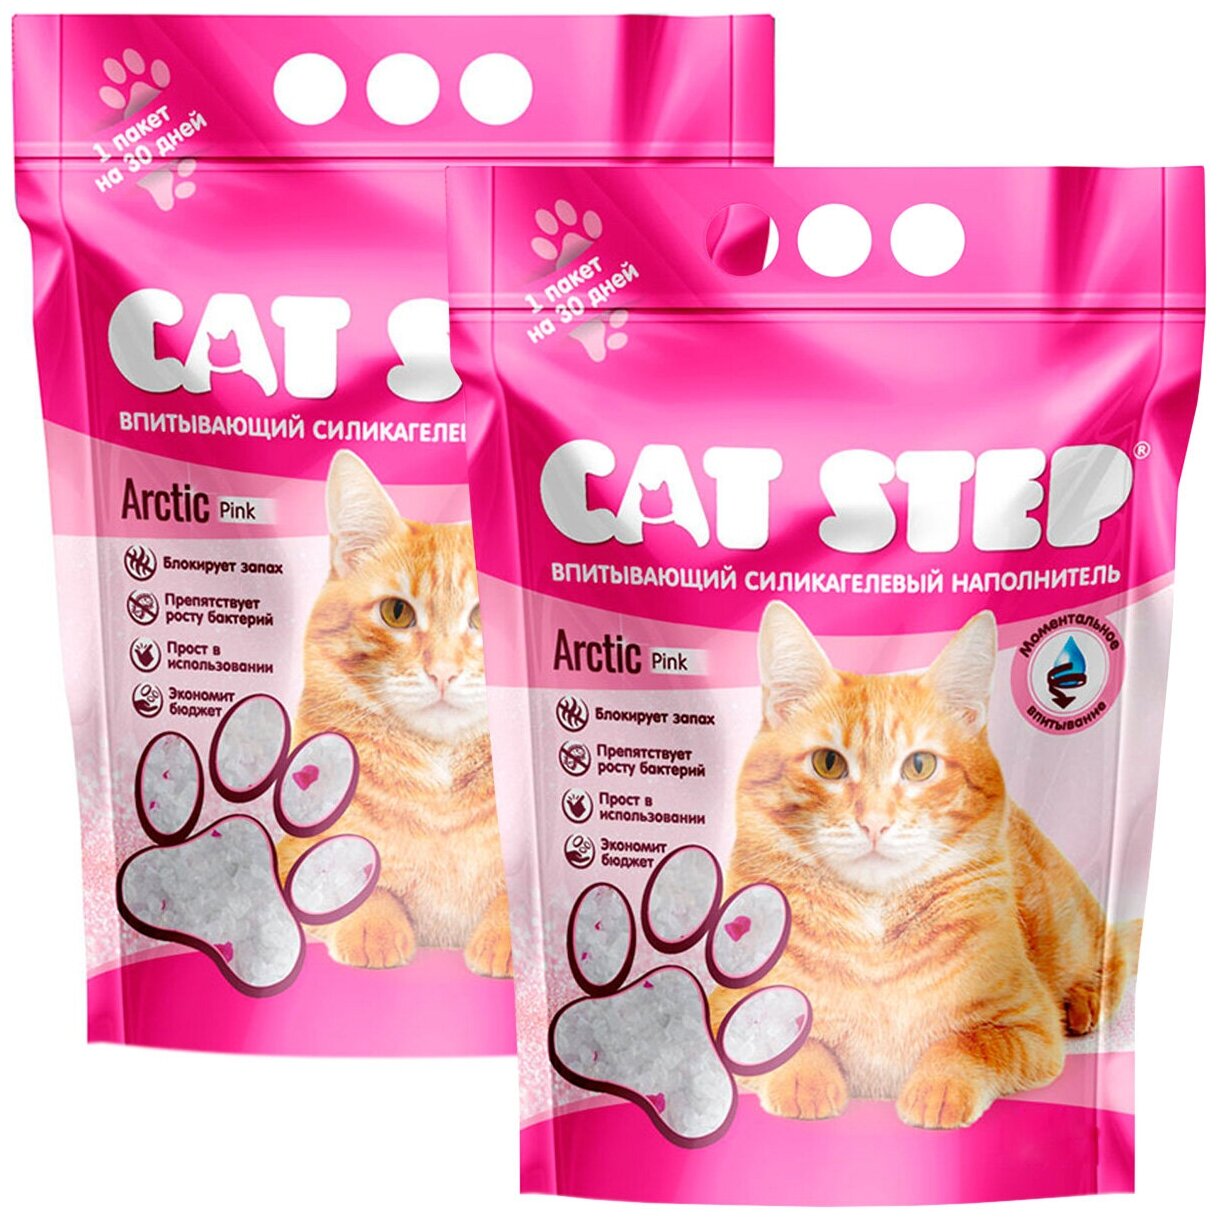 CAT STEP ARCTIC PINK наполнитель силикагелевый впитывающий для туалета кошек (7,6 + 7,6 л)